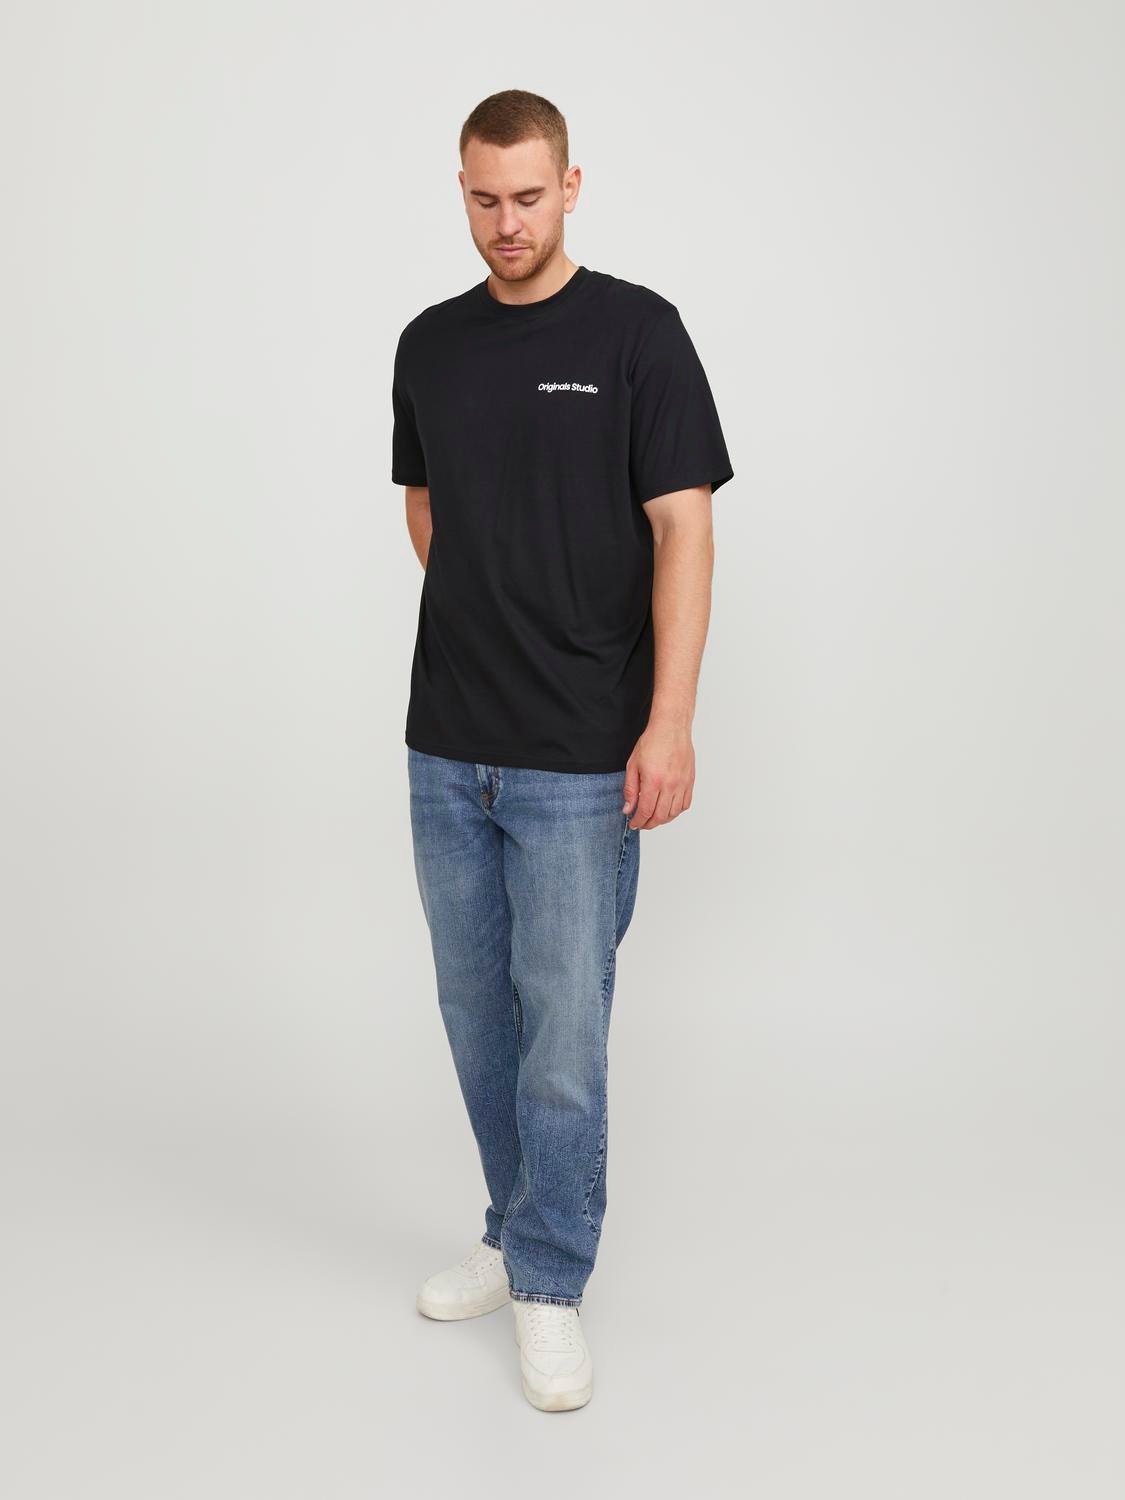 Jack & Jones Plus Size T-shirt Estampar -Black - 12258772